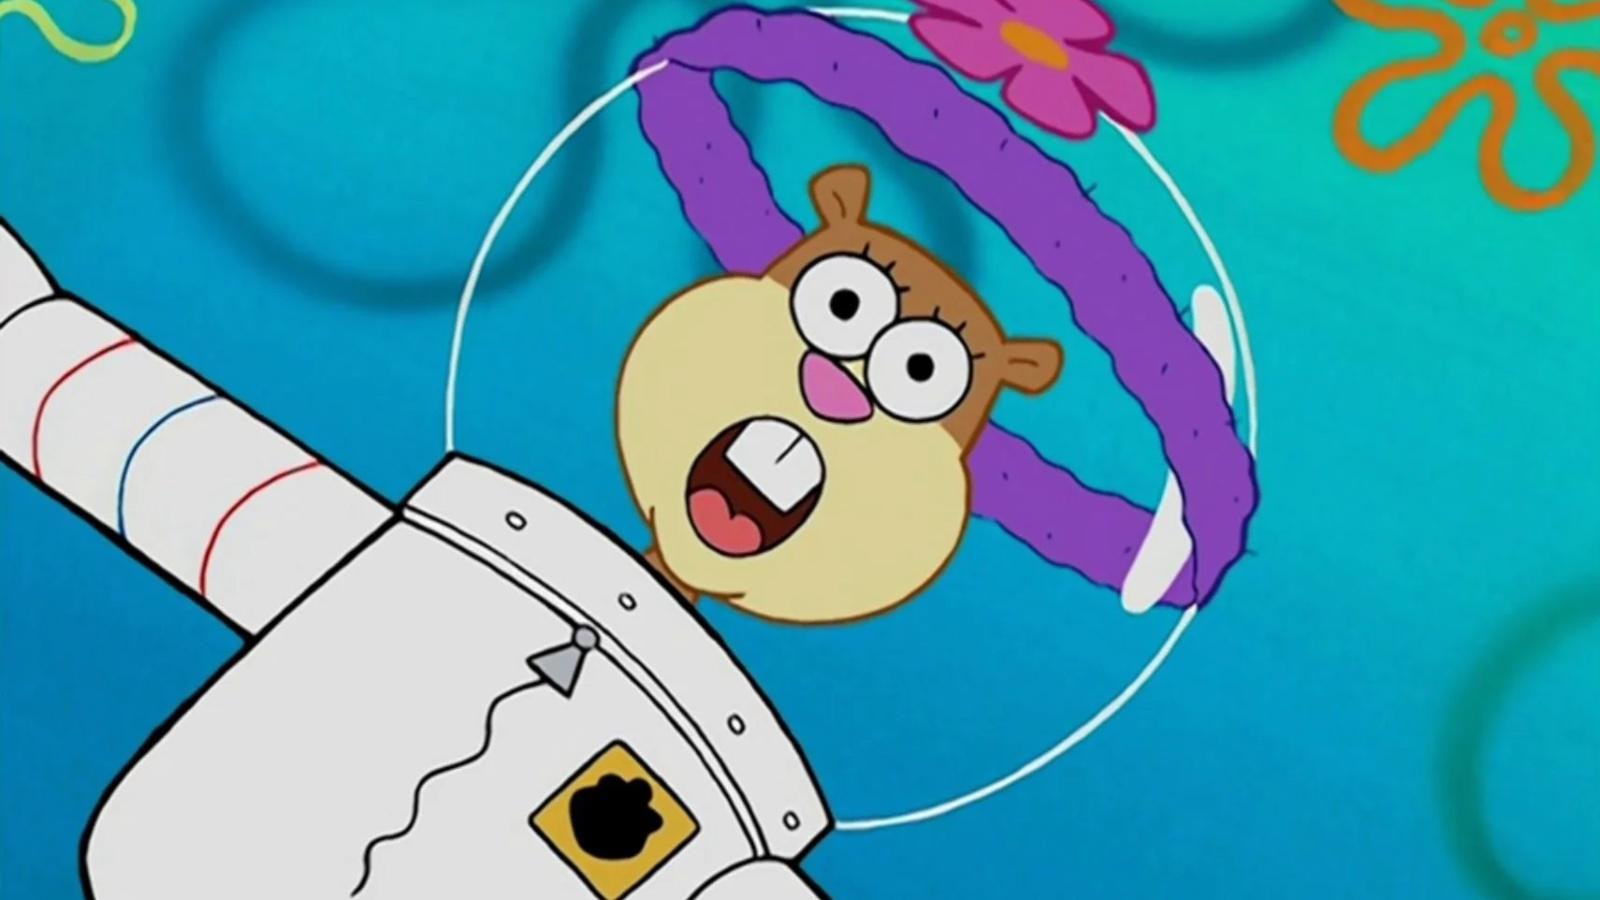 Sandy Cheeks in Spongebob Squarepants series.